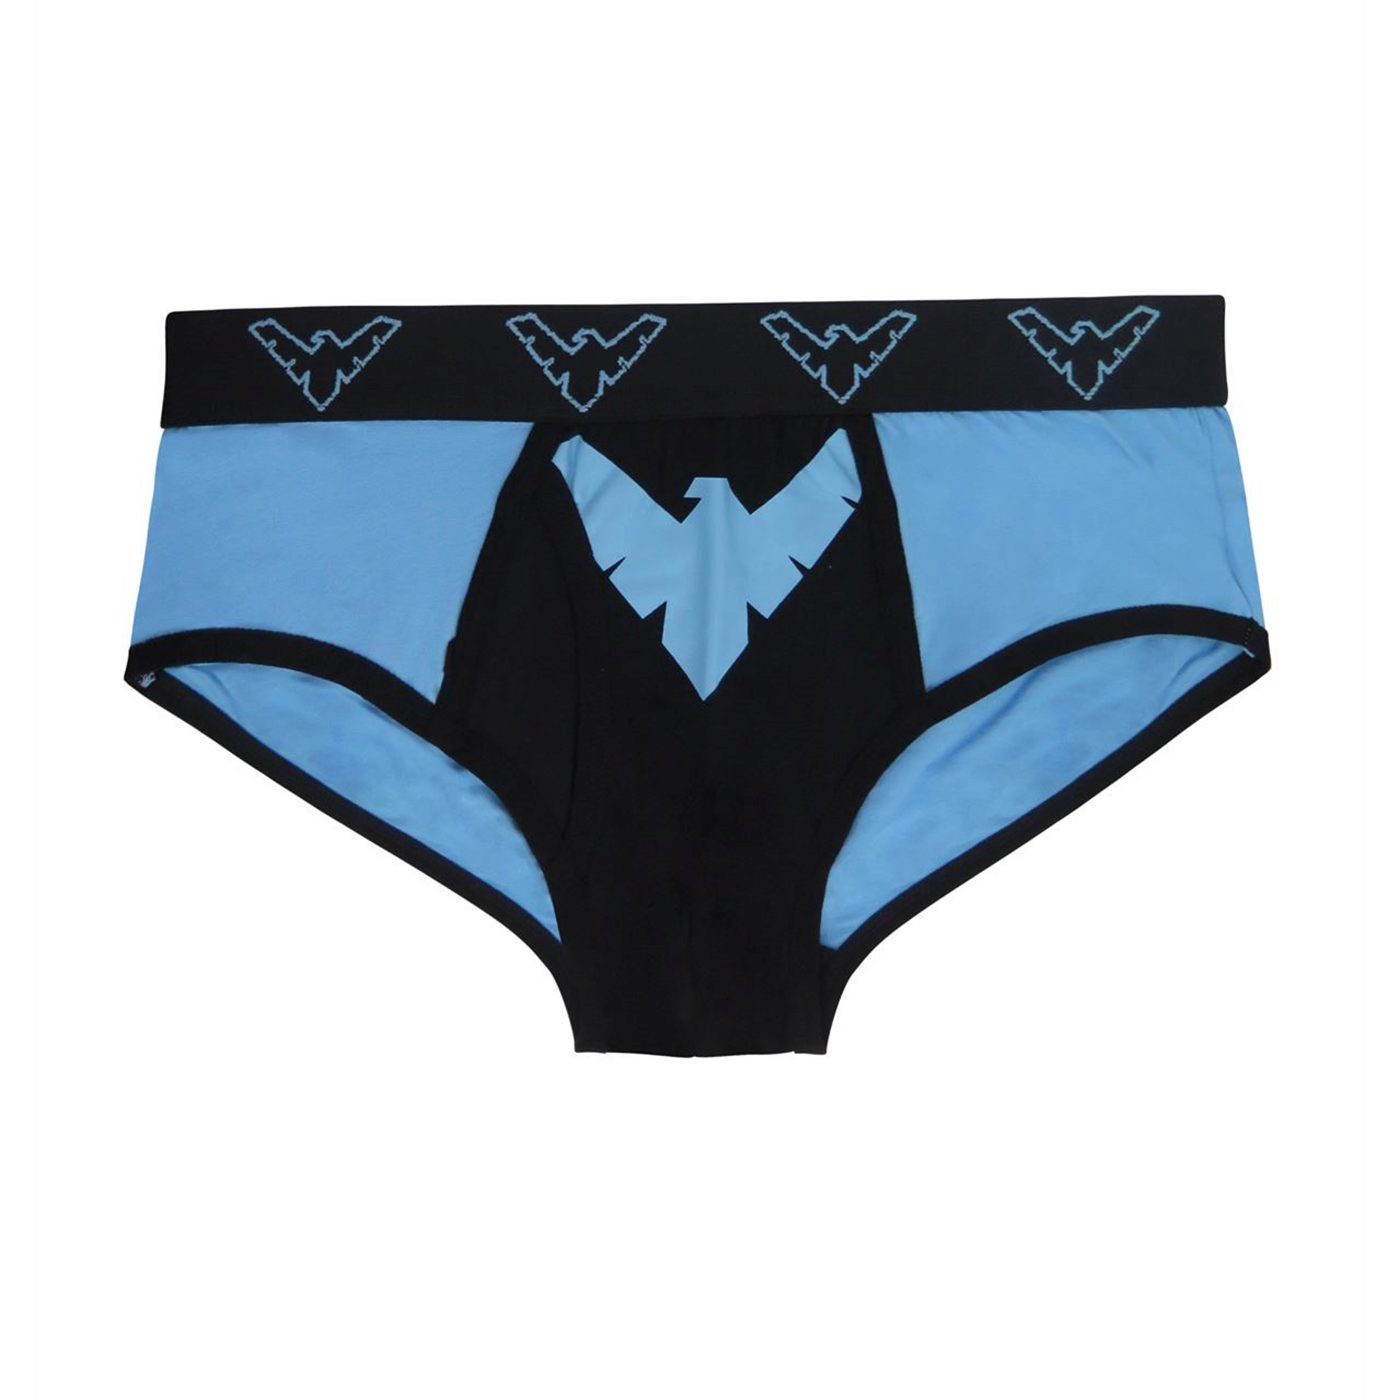 Nightwing Symbol Men's Underwear Fashion Briefs